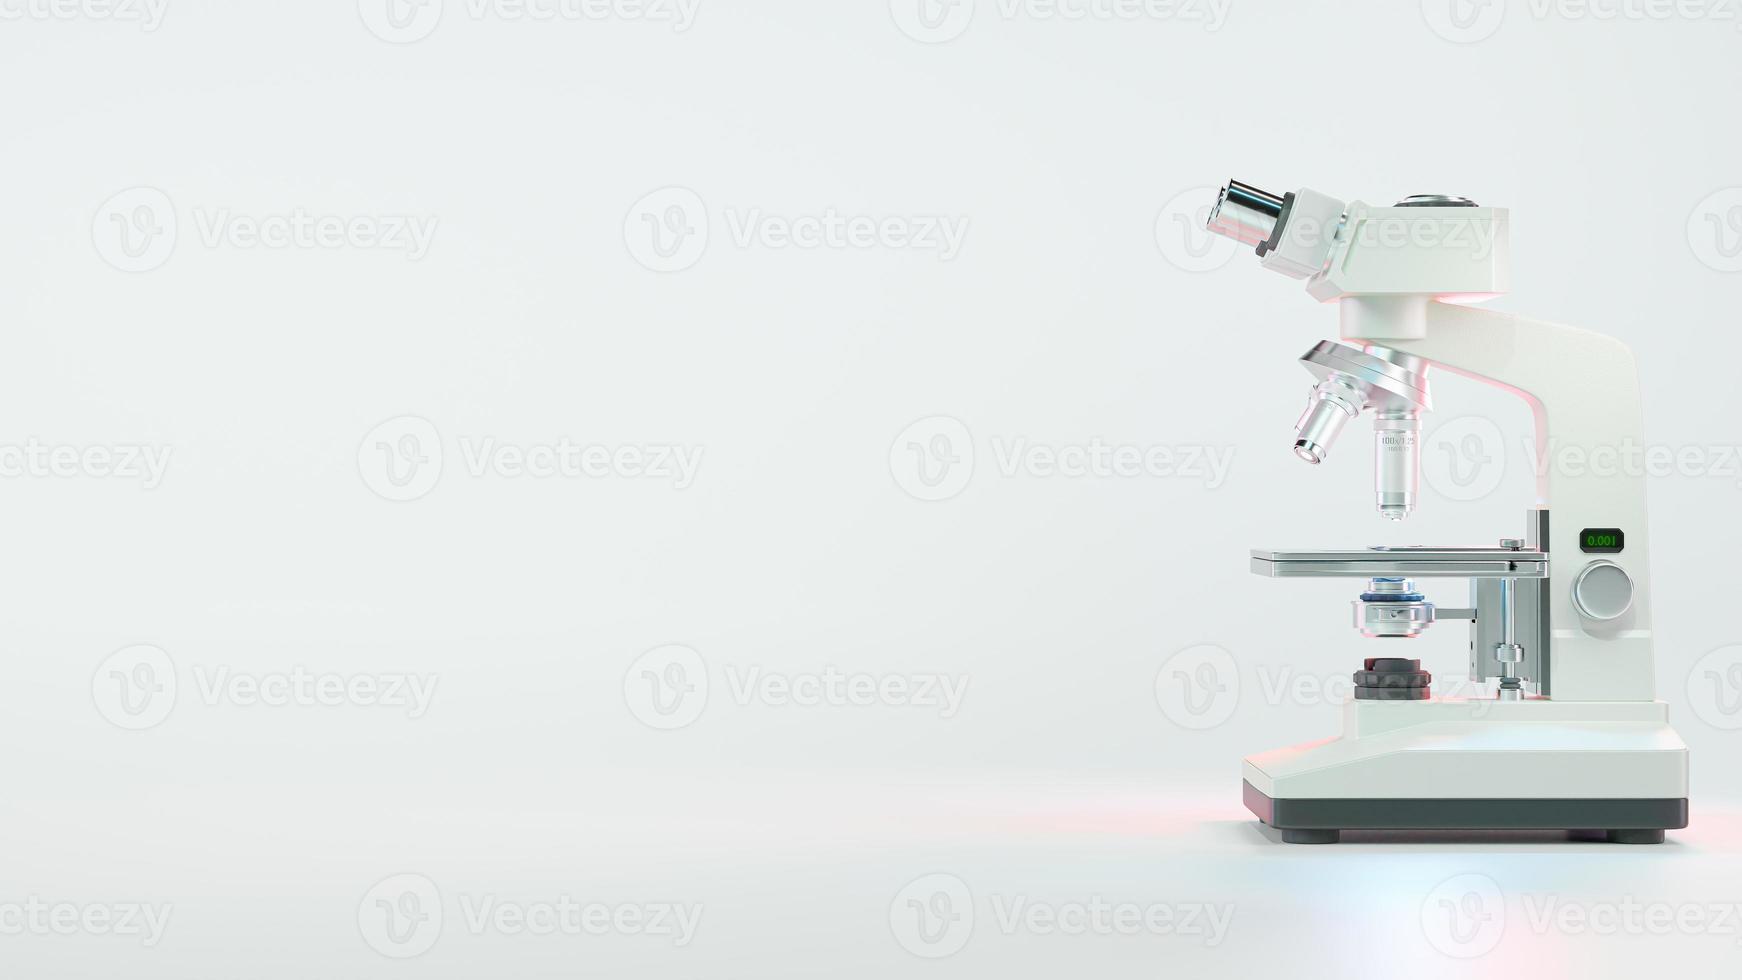 mikroskop kemi. farmaceutiskt instrument. mikrobiologi förstoringsverktyg och symbol för kemisk vetenskap utforskning. foto